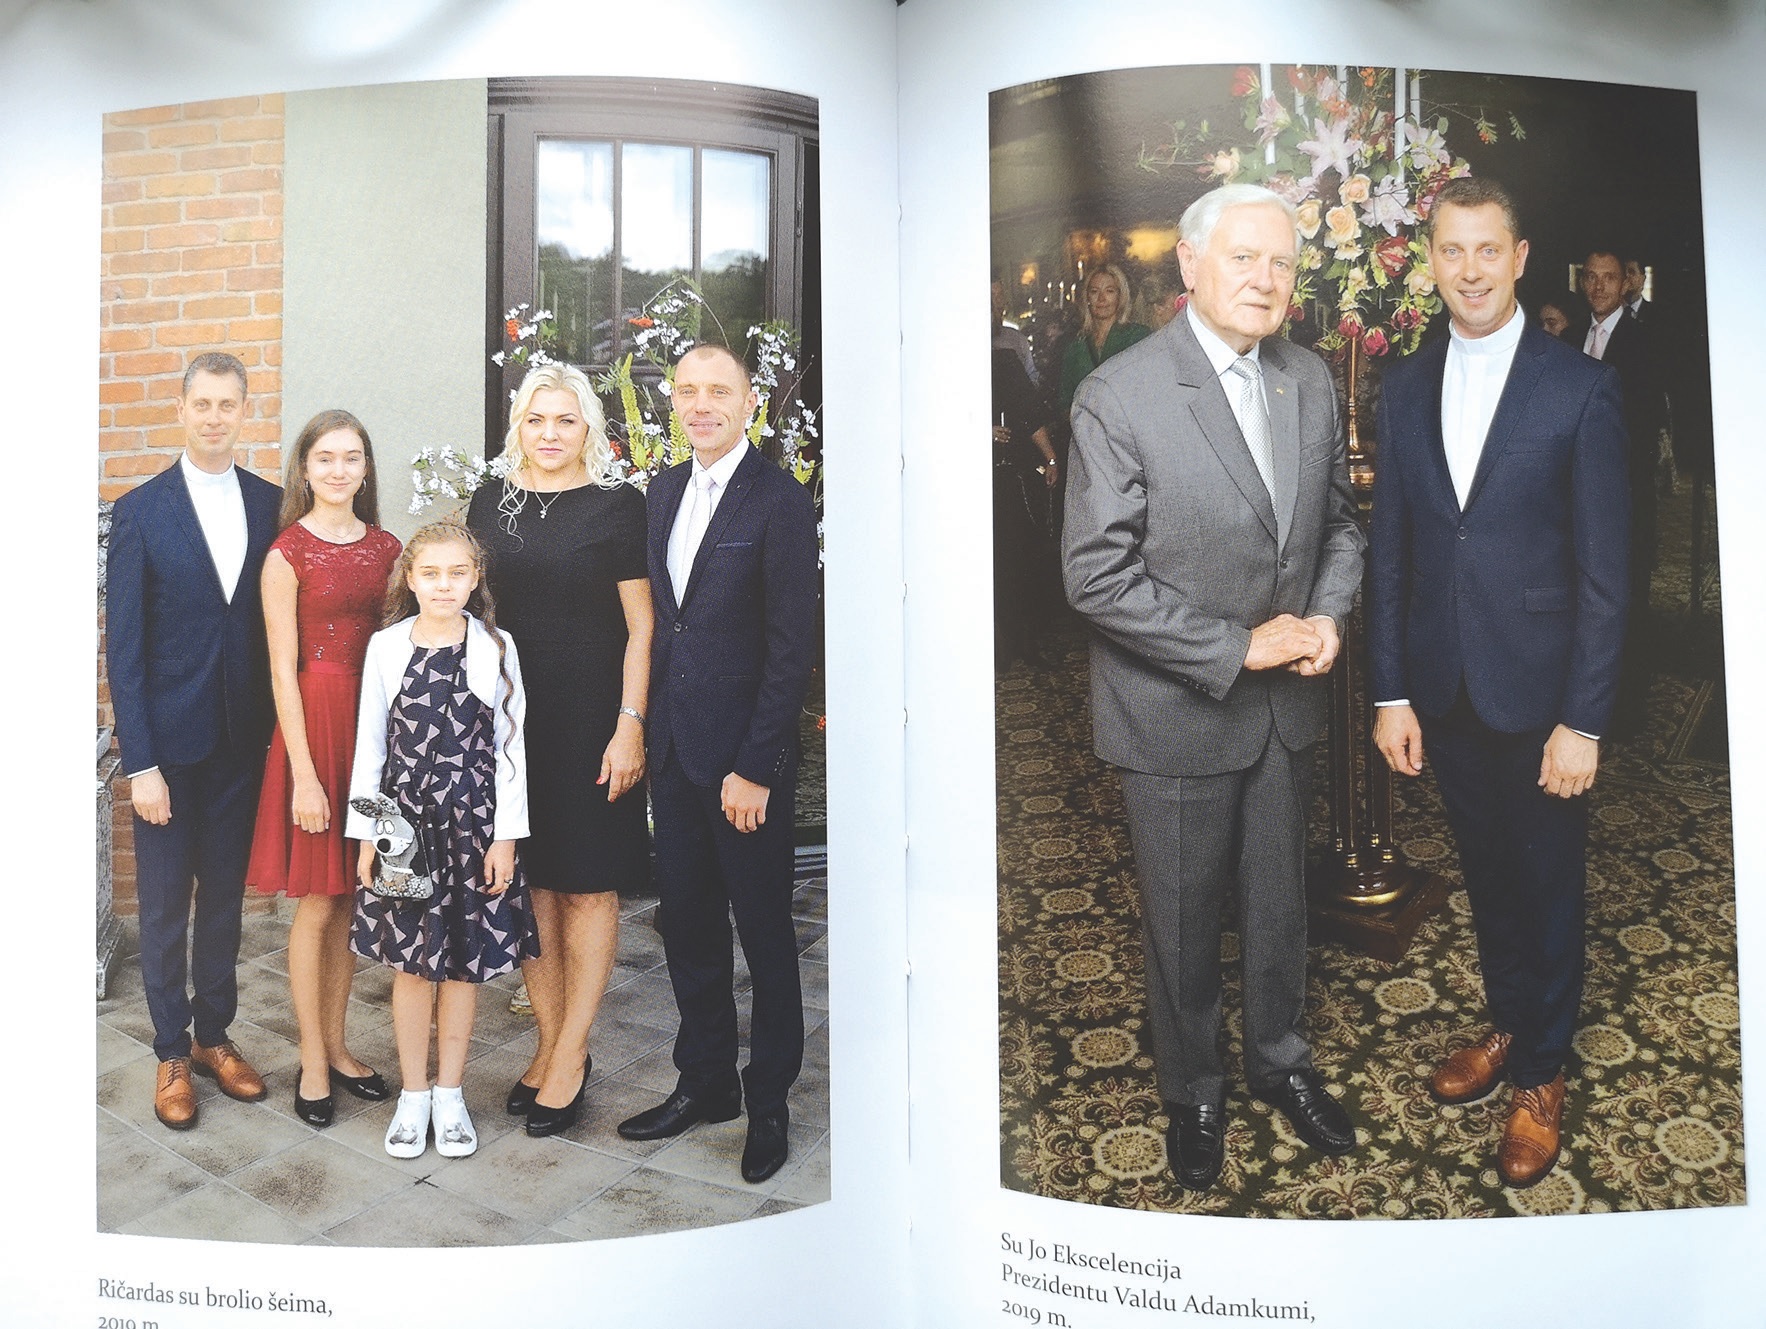 Knygos puslapiuose – ypatingi kunigo Ričardo gyvenimo momentai. Knygos puslapyje kairėje – jis su brolio šeima 2019 m. Dešinėje – su Jo Ekscelencija Prezidentu Valdu Adamkumi 2019 m.